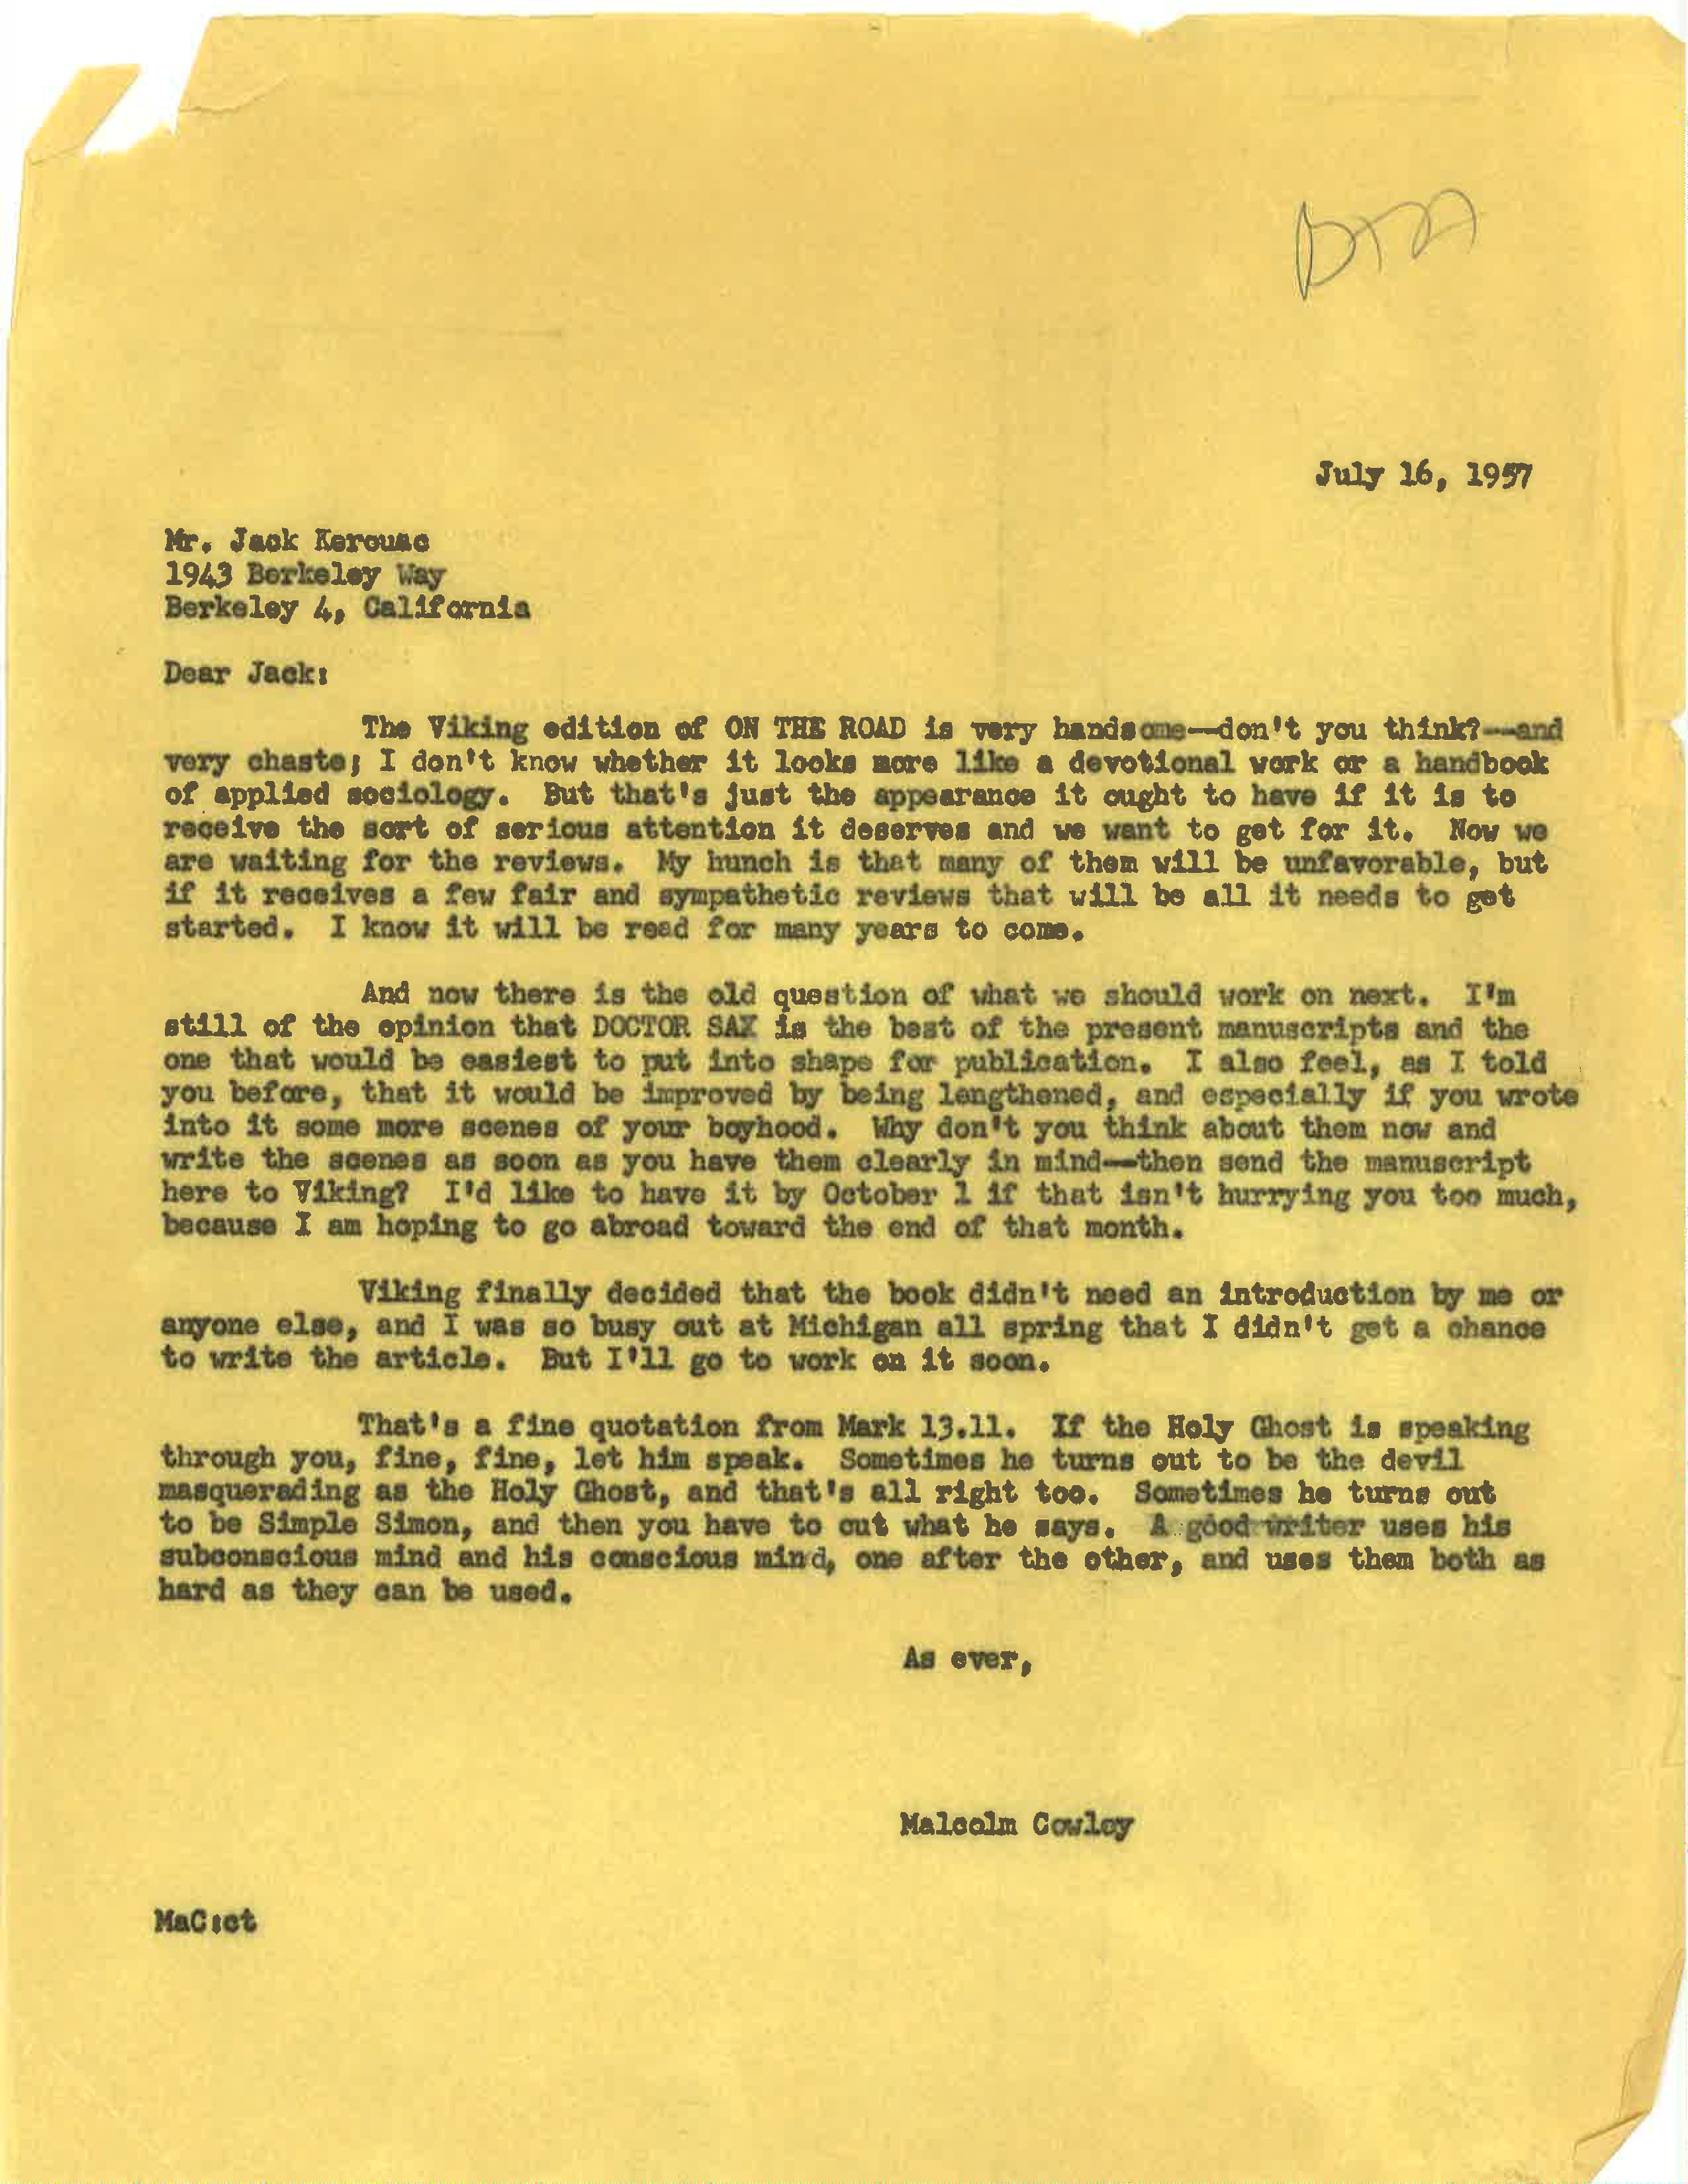 lettre que Cowley a écrite à Kerouac en juillet 1957 à la veille de la publication